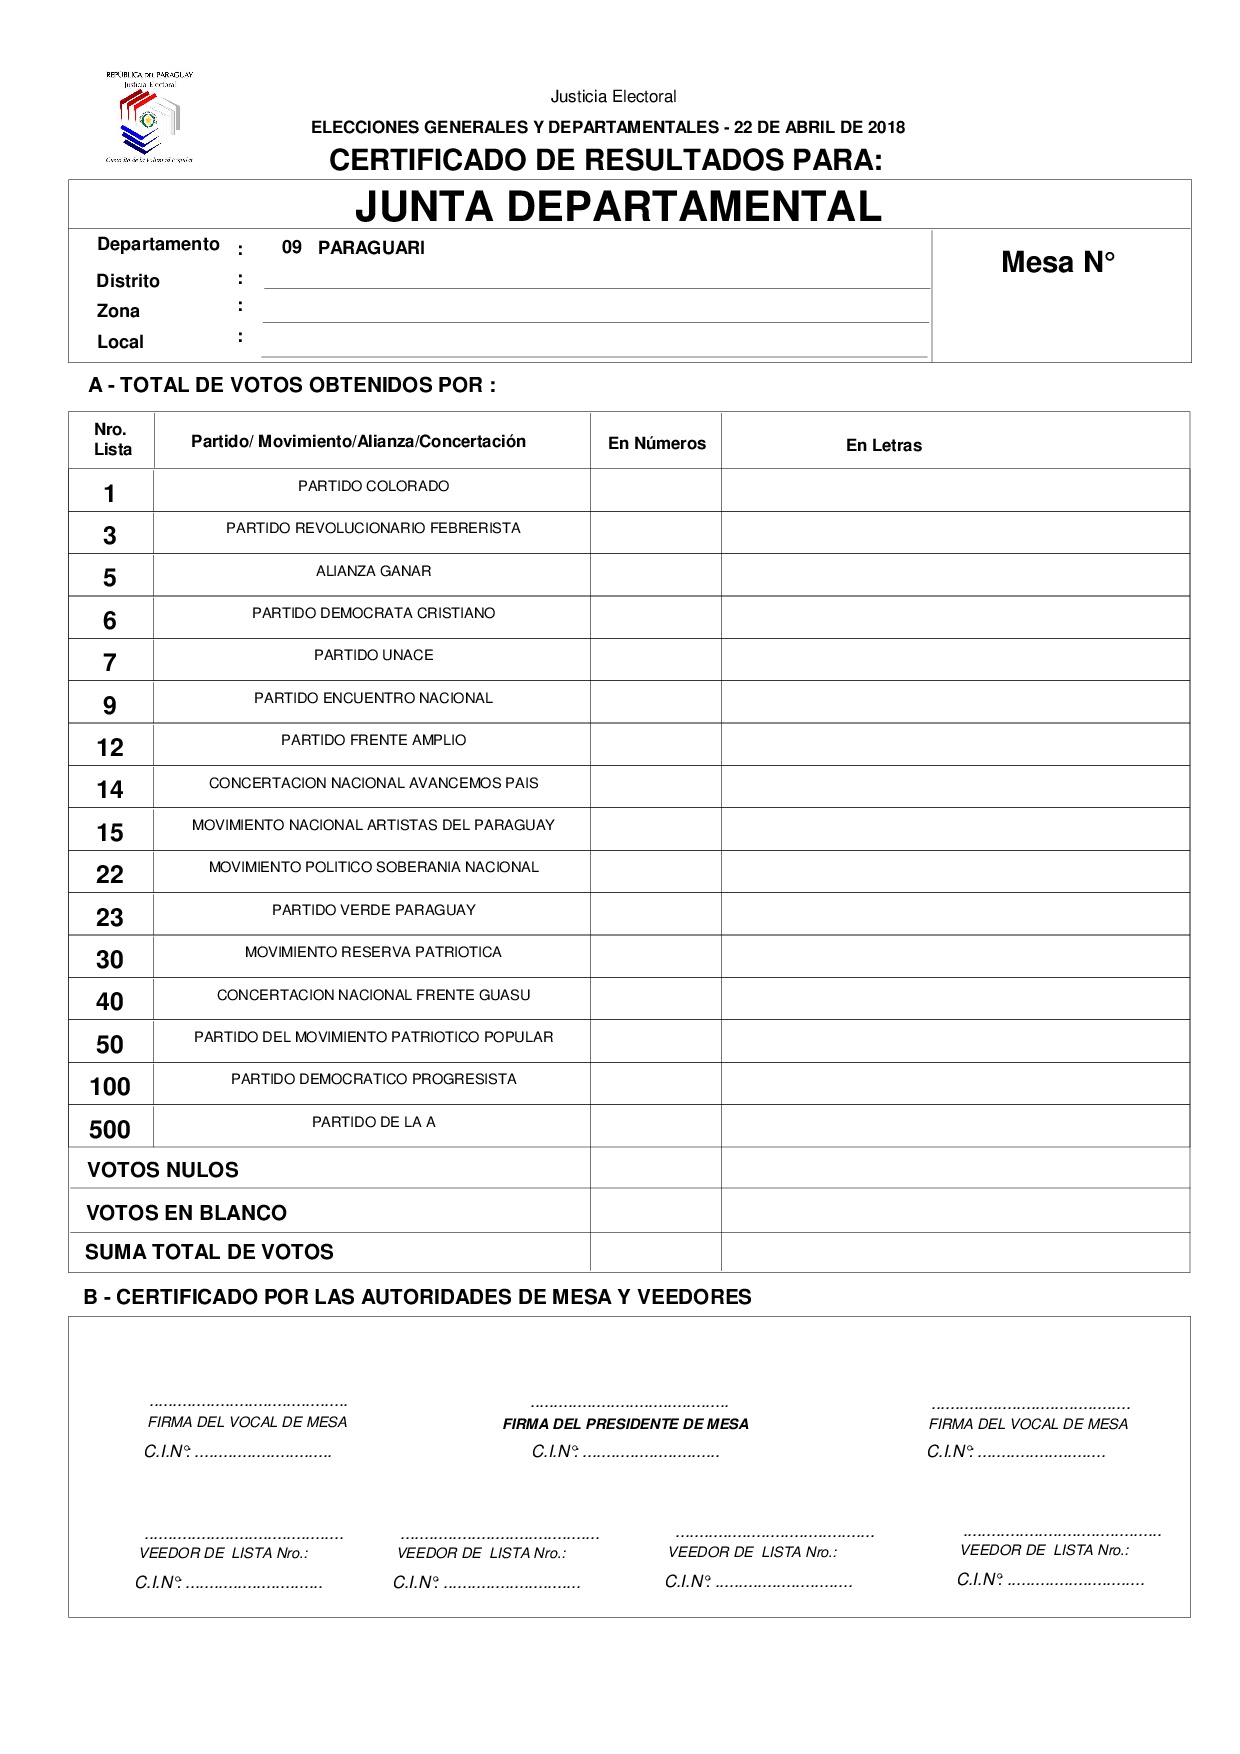 Certificado de Resultados Para JUNTA DEPARTAMENTAL DE PARAGUARI